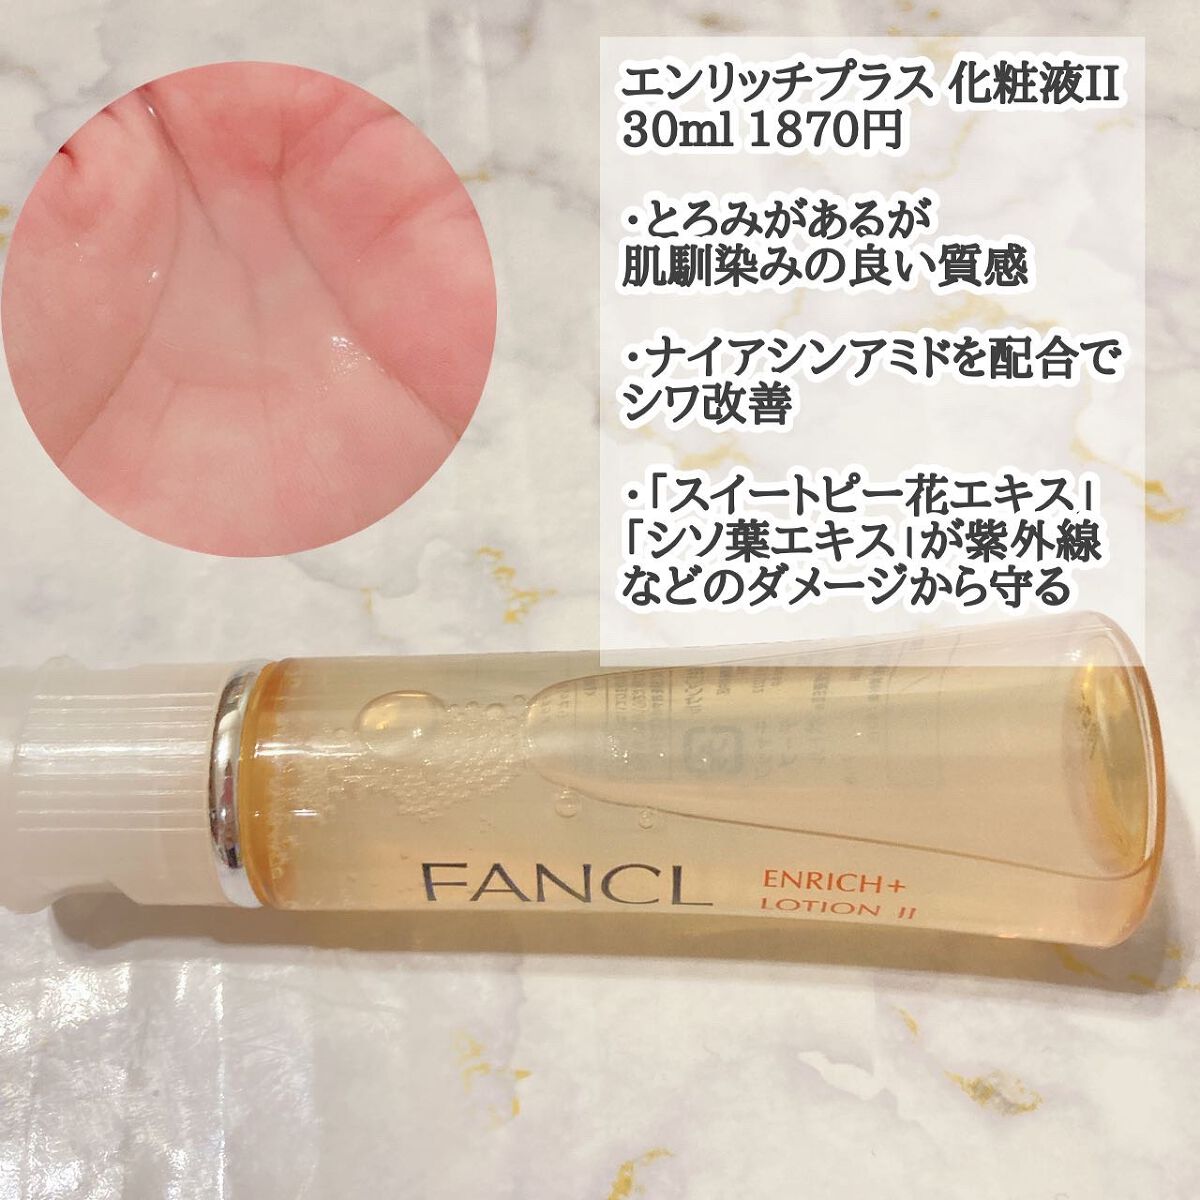 ファンケルのスキンケア・基礎化粧品 エンリッチプラス 化粧液Ⅱ 